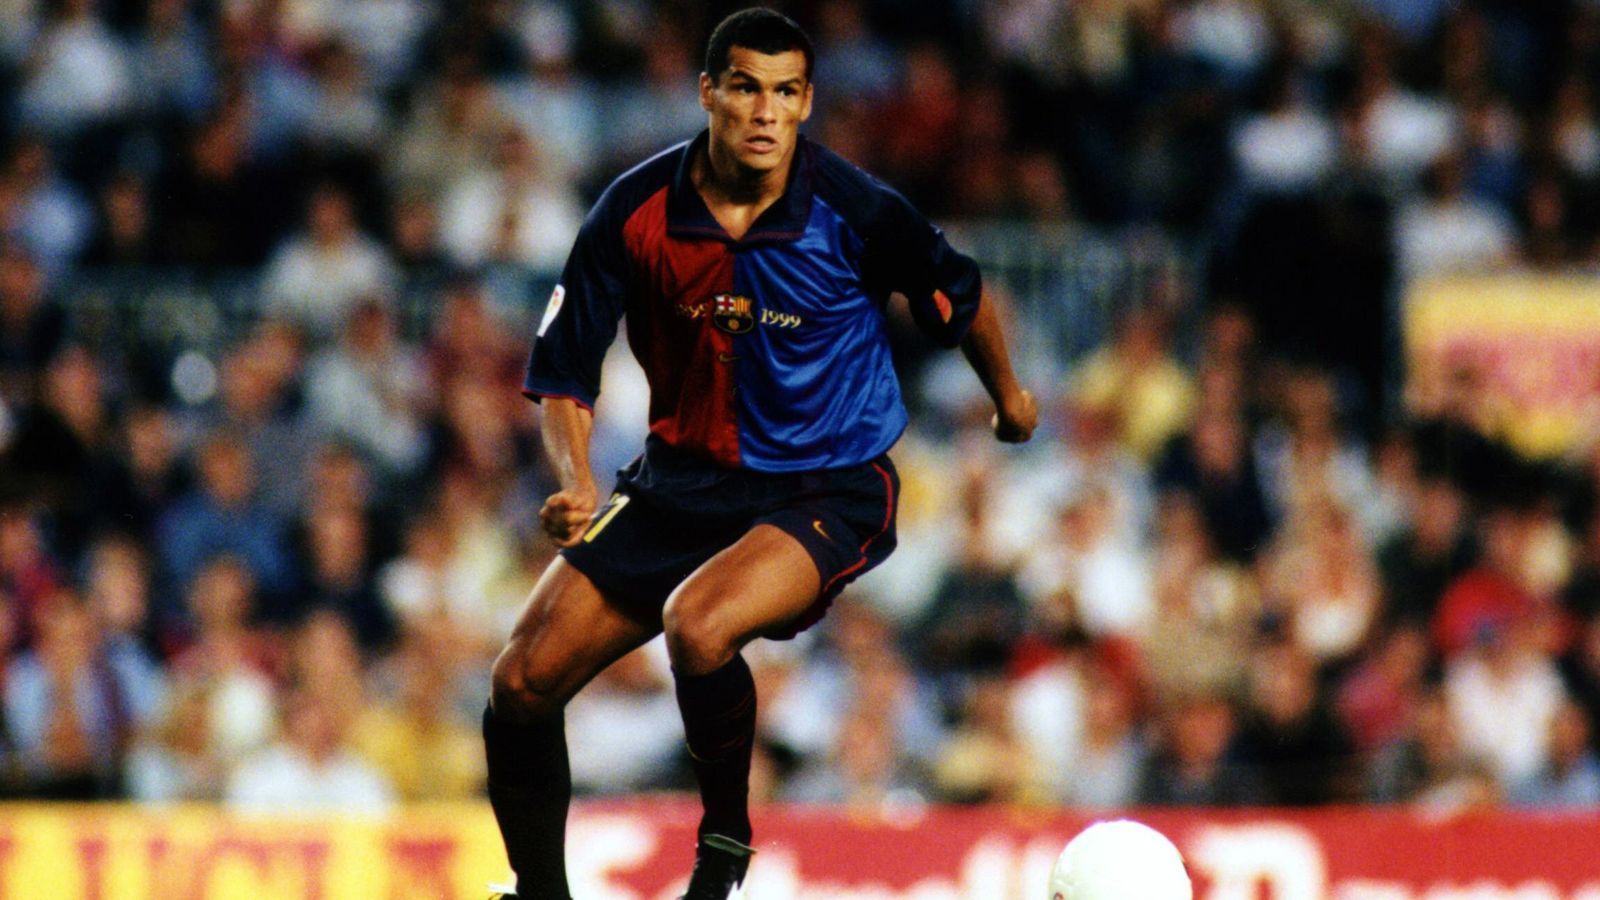 
                <strong>Rivaldo (1999)</strong><br>
                Der Brasilianer Rivaldo musste sich aber nur noch ein weiteres Jahr gedulden, dann wurde der einstige Freistoßspezialist 1999 selbst mit dem Ballon d'Or ausgezeichnet. Der damalige Profi des FC Barcelona gewann in dem Jahr mit den Katalanen zum zweiten Mal in Folge die spanische Meisterschaft. Bei der Wahl zum Weltfußballer waren noch David Beckham und Gabriel Batistuta unter den Top 3. 
              